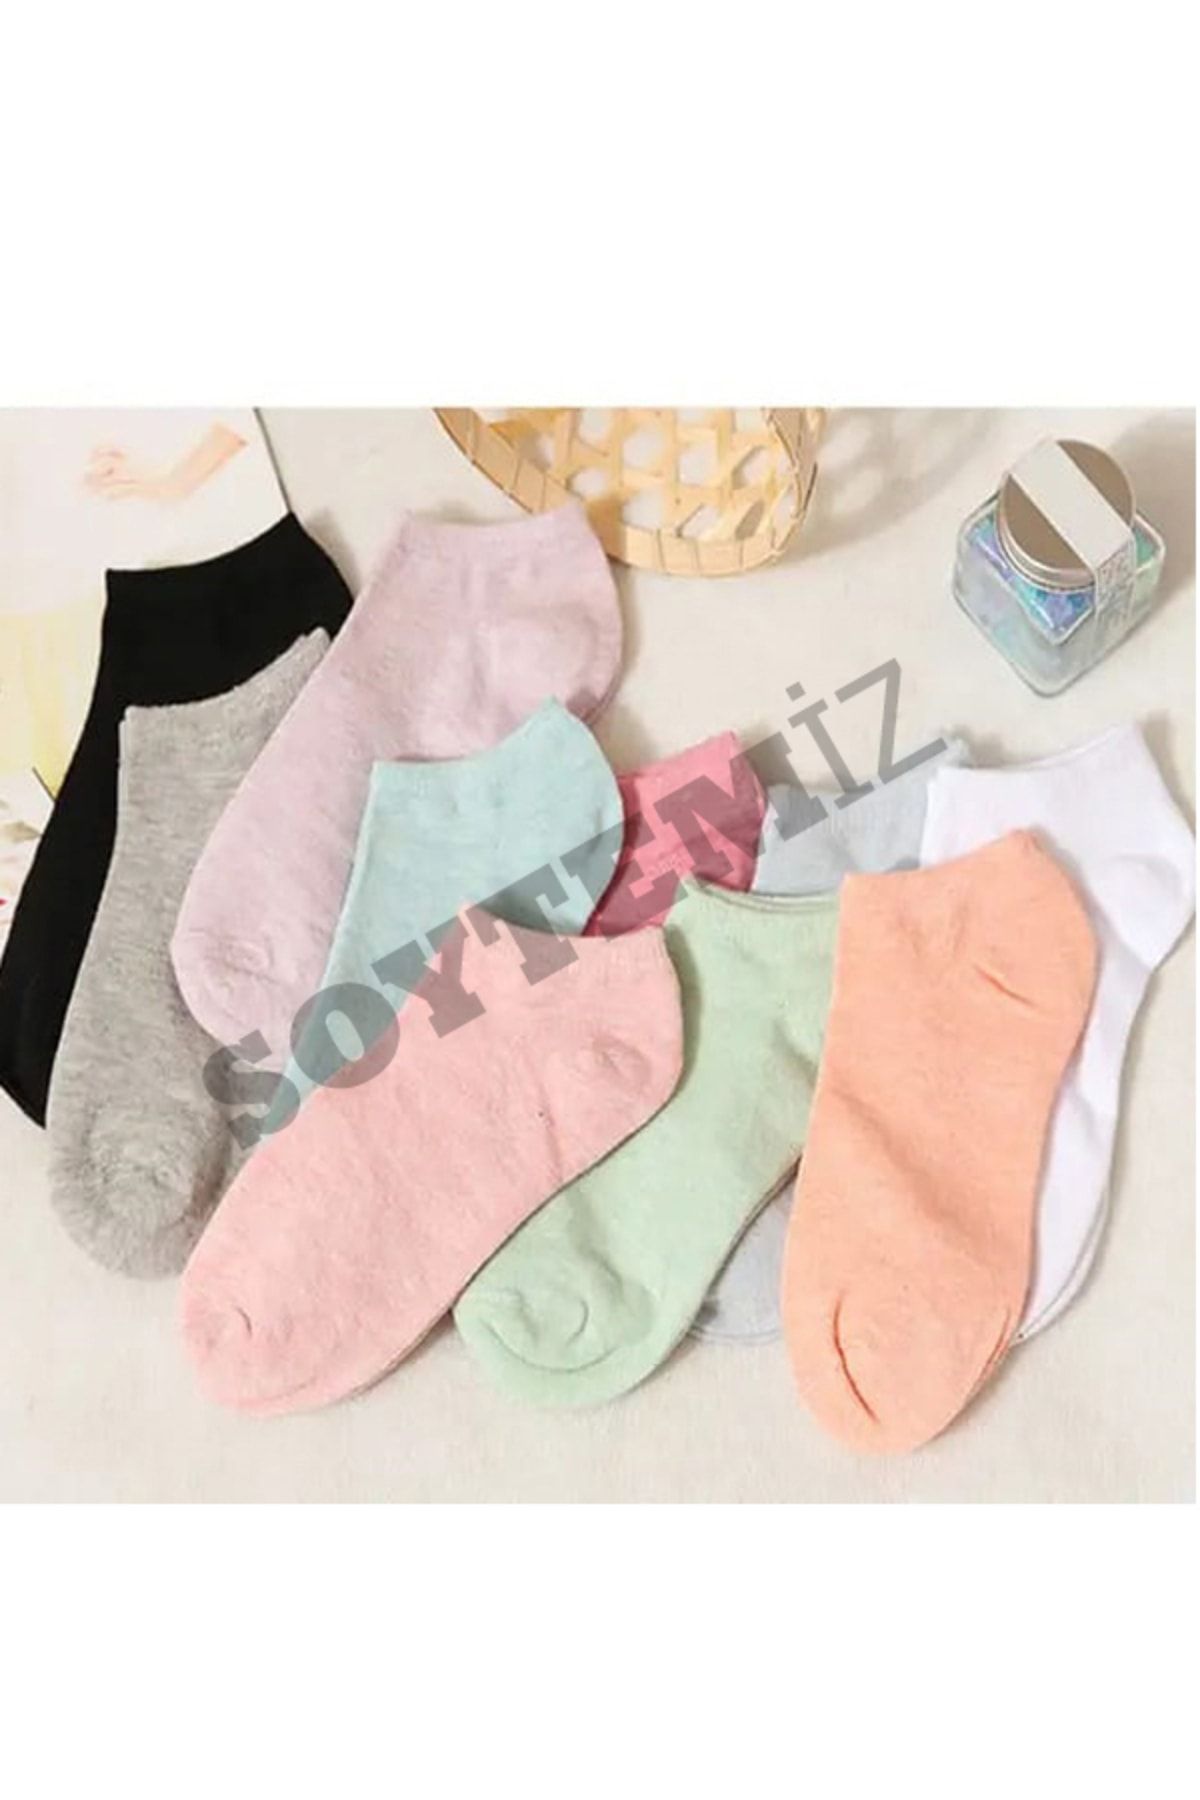 SOYTEMİZ 8 Çift Koton Karışık Renk Kadın Patik Çorap